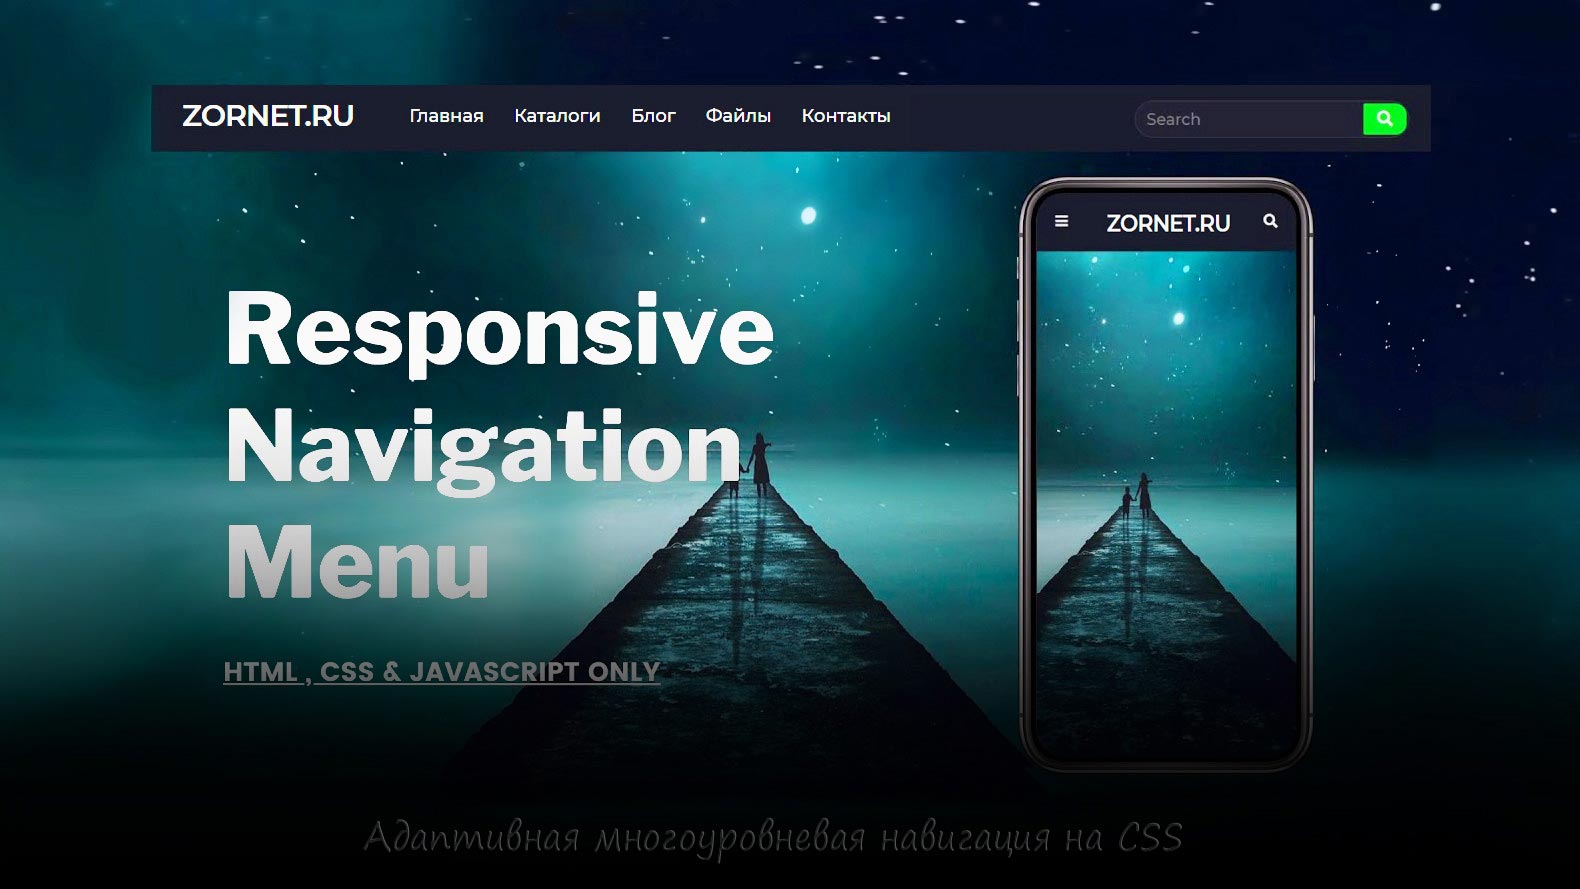 Адаптивное меню на CSS для навигации сайта